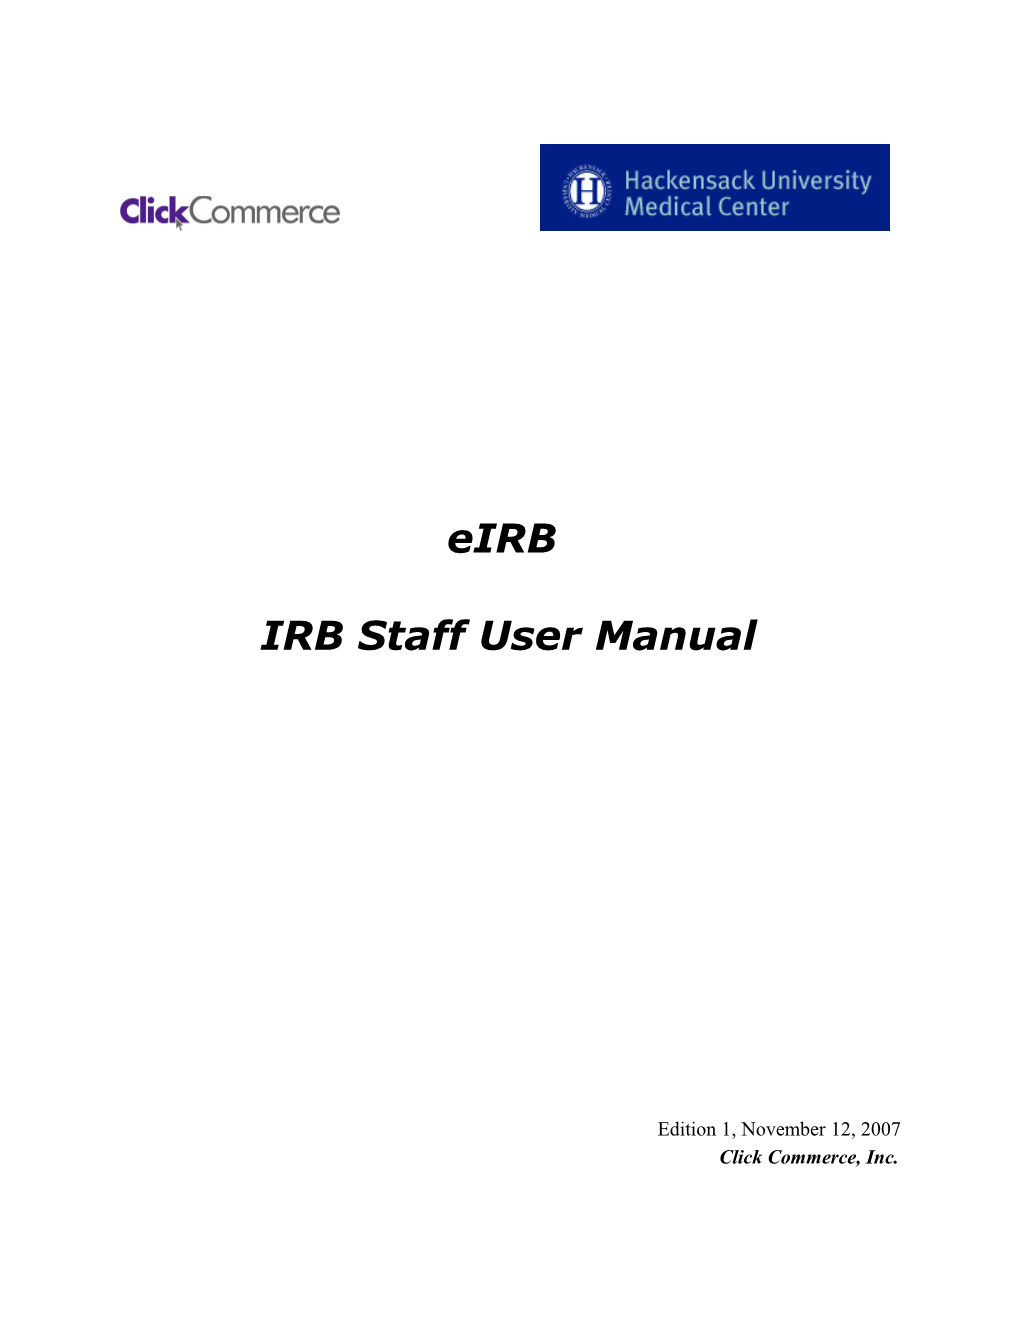 IRB Staff User Manual